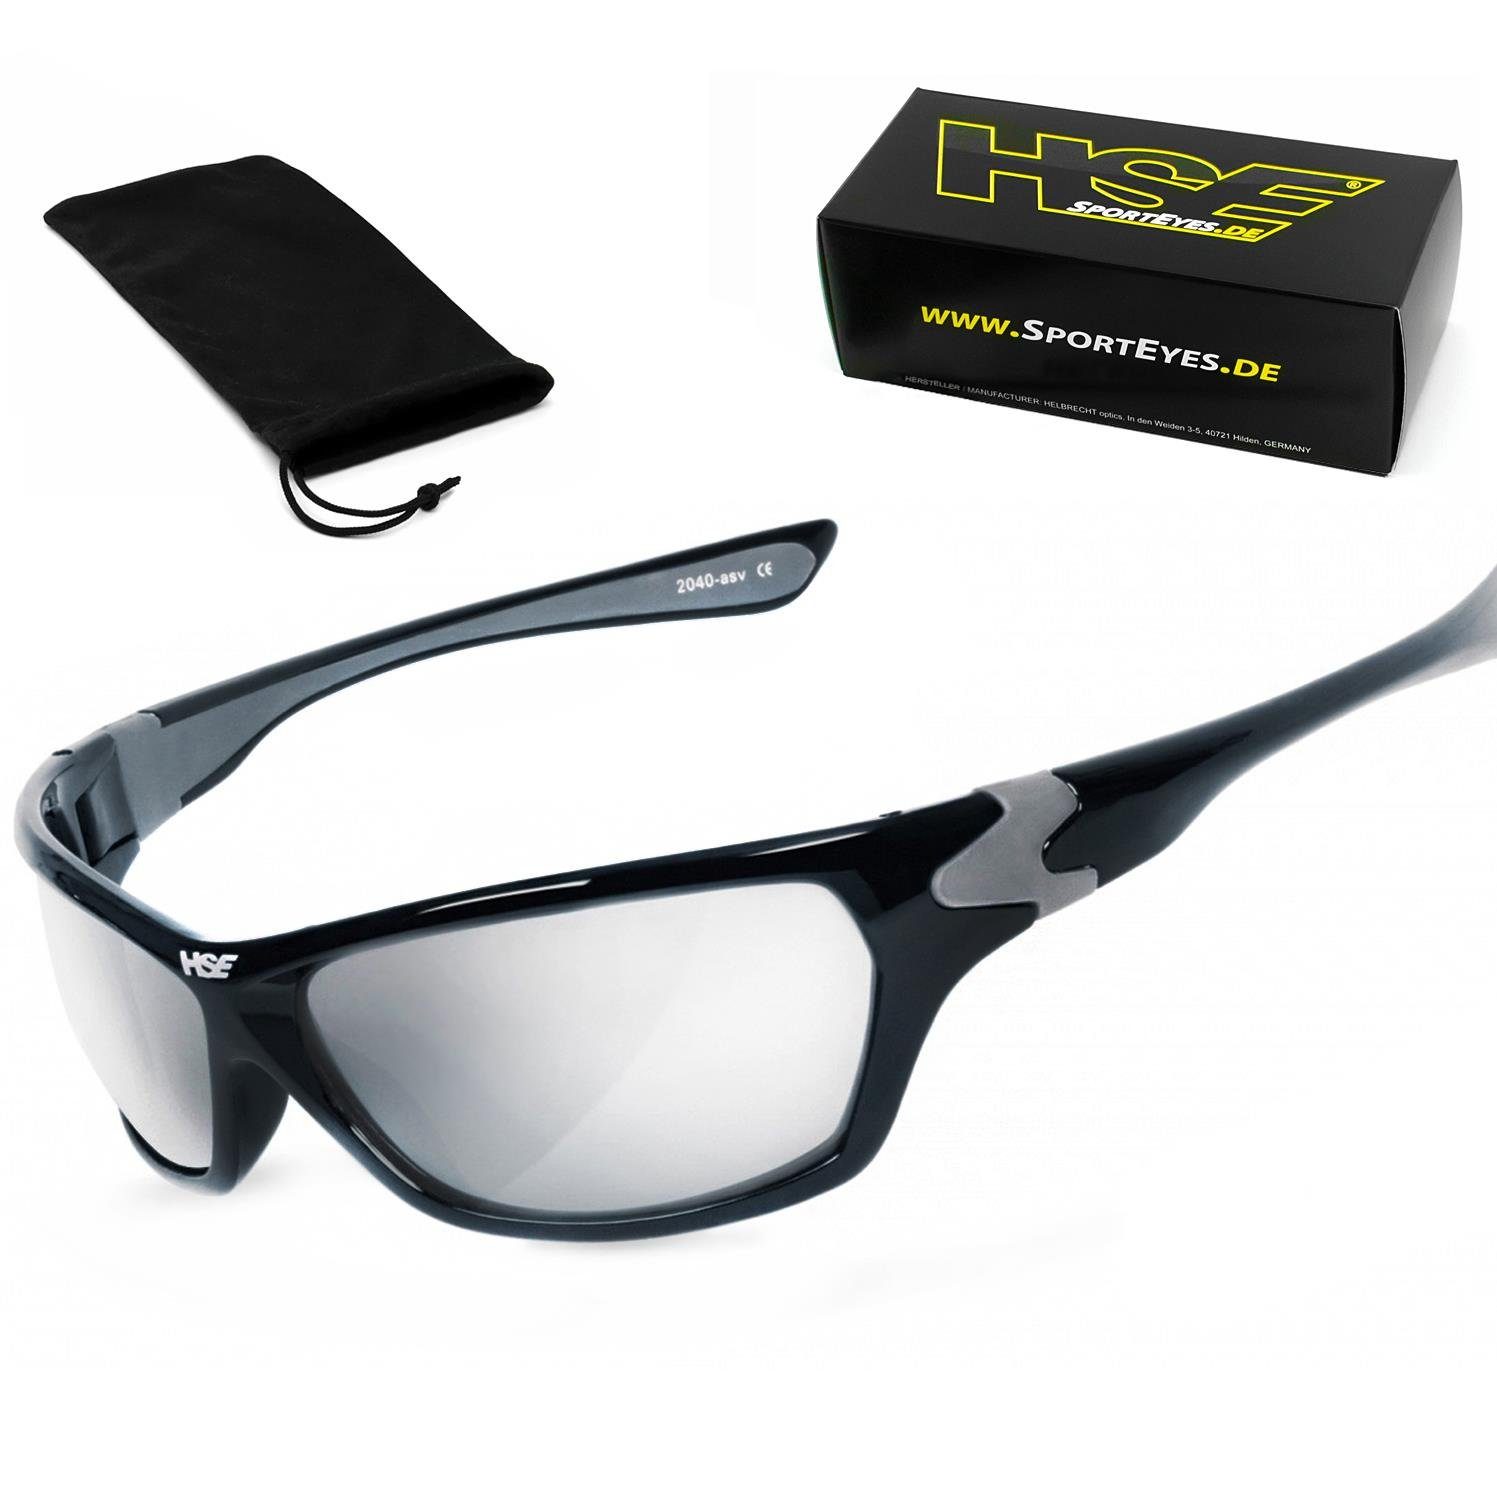 HSE - SportEyes Sportbrille HIGHSIDER, Steinschlagbeständig durch Kunststoff-Sicherheitsglas